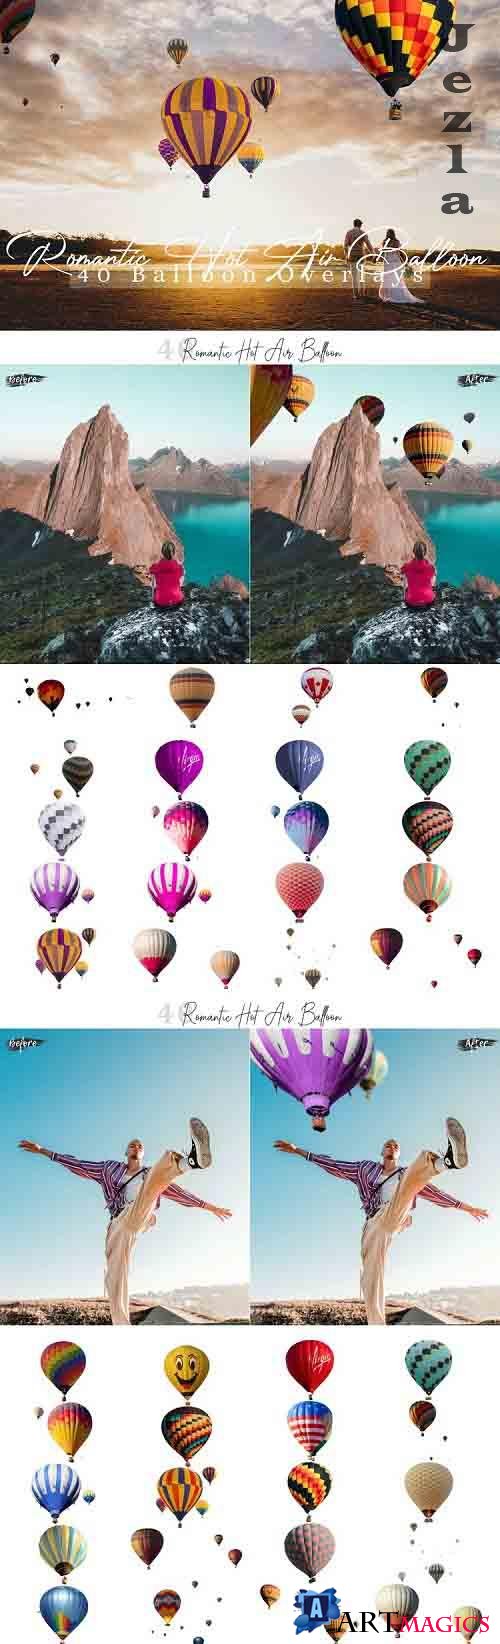 40 Romantic hot air balloon Photo Overlays - 568634